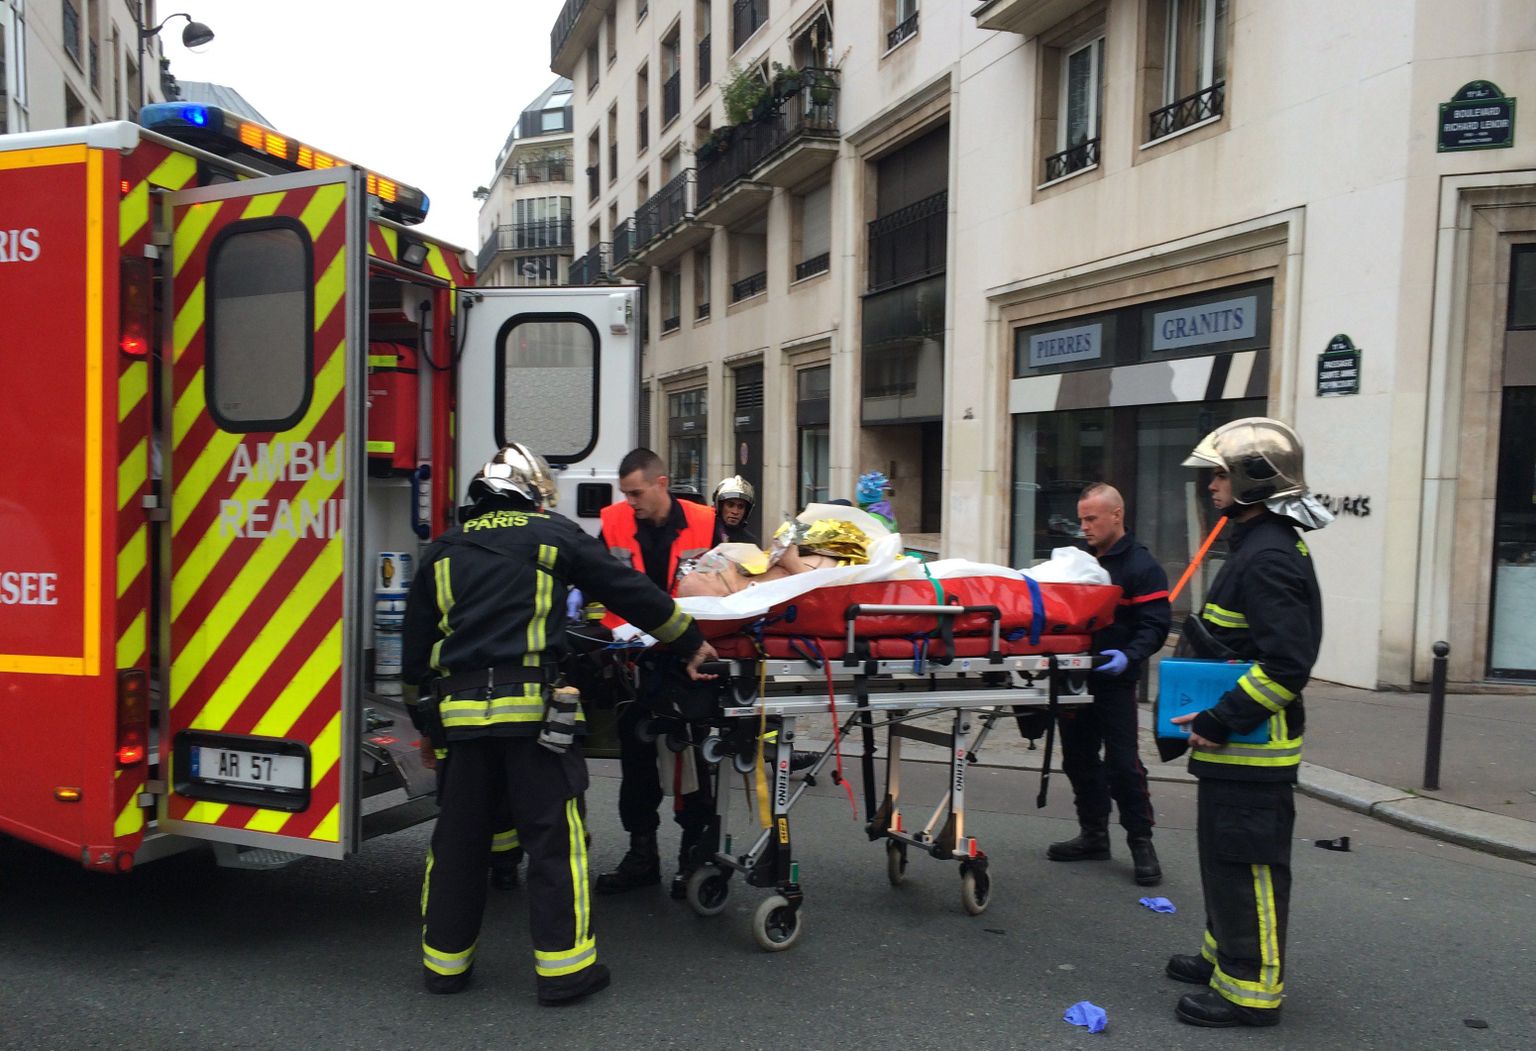 Из редакции газеты Charlie Hebdo в Париже выносят раненого.